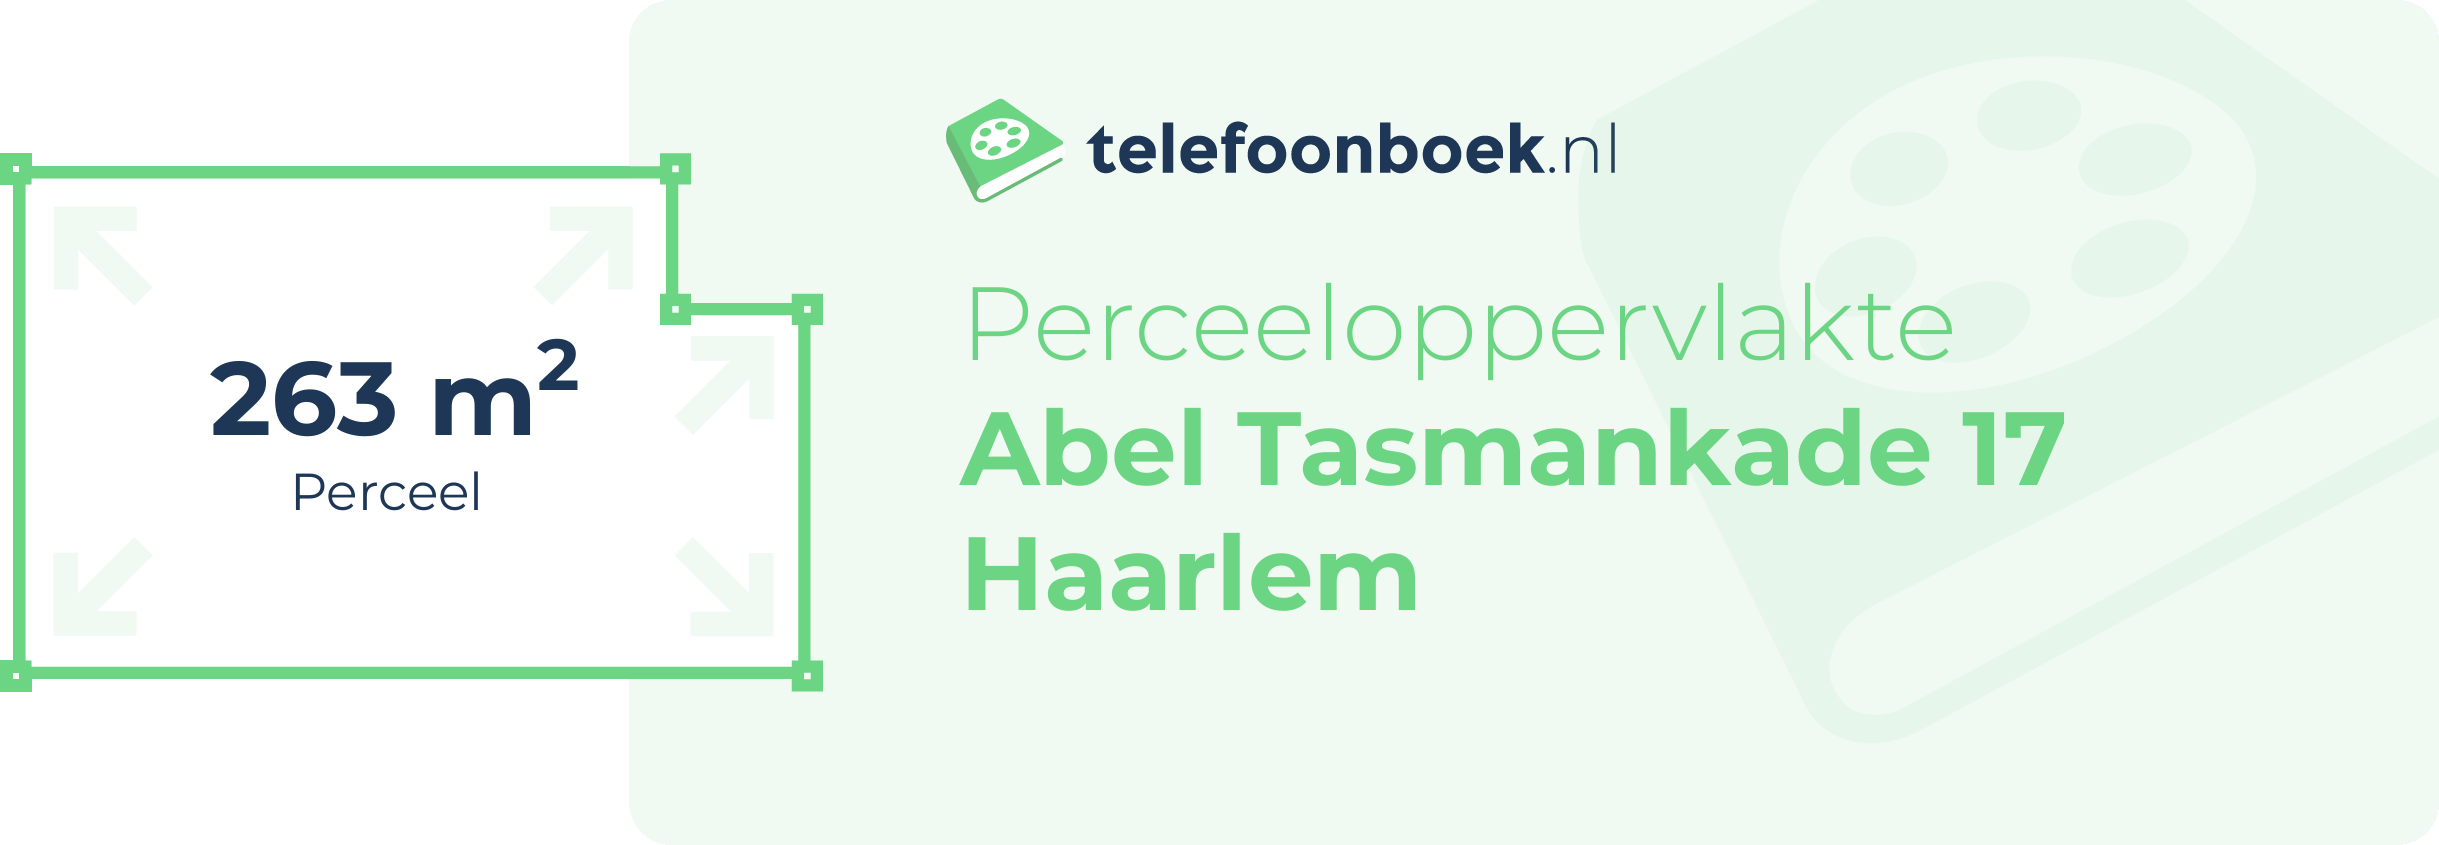 Perceeloppervlakte Abel Tasmankade 17 Haarlem